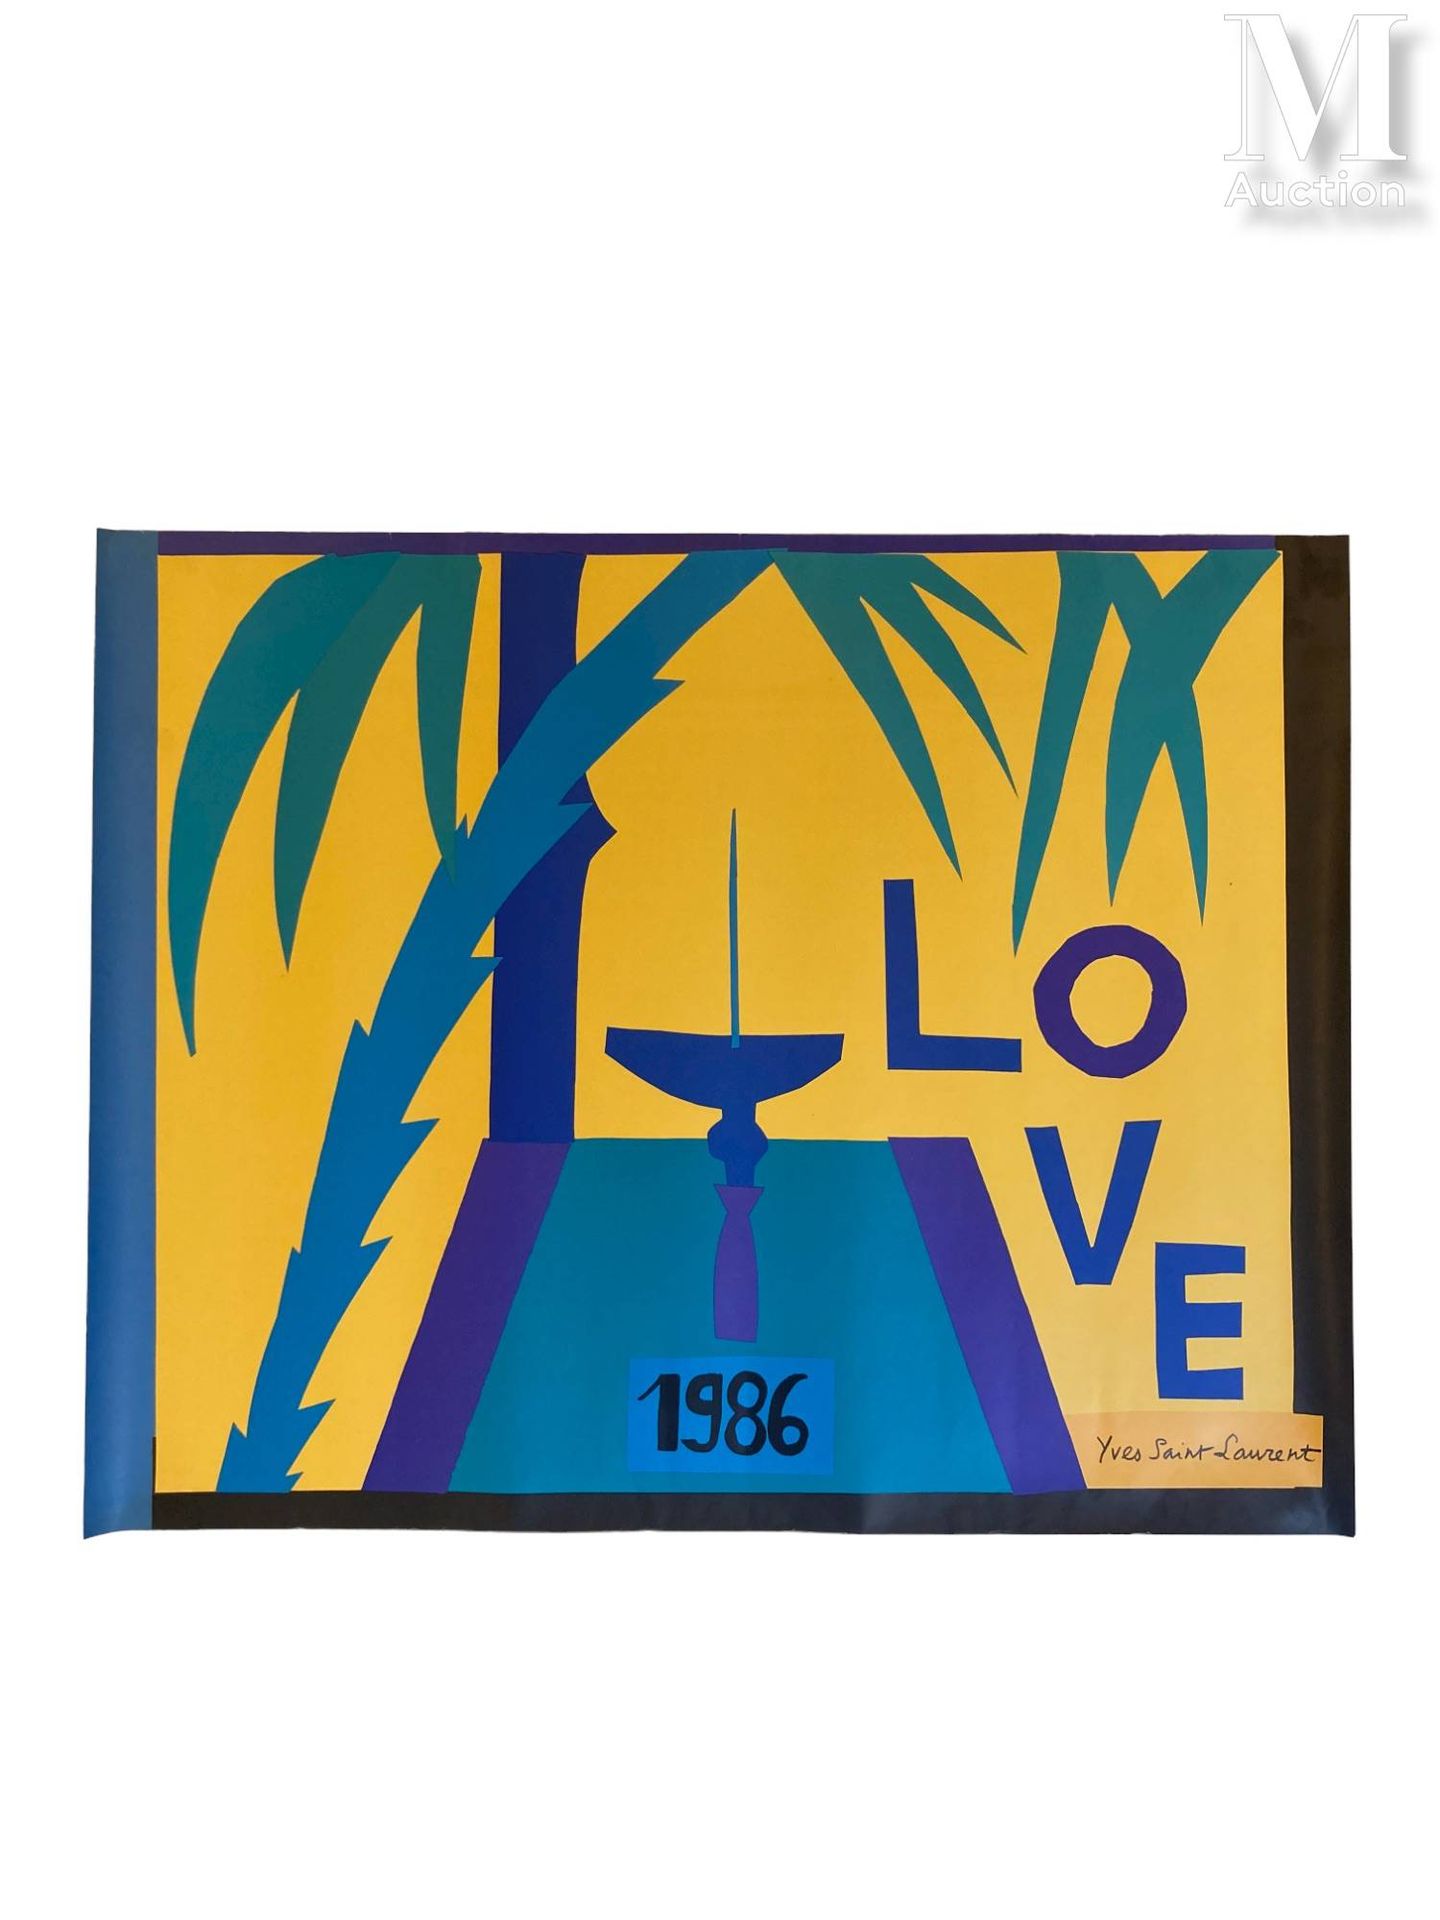 YVES SAINT LAURENT - 1986 Affiche "Love"



impression sur papier 

68 x 54 cm